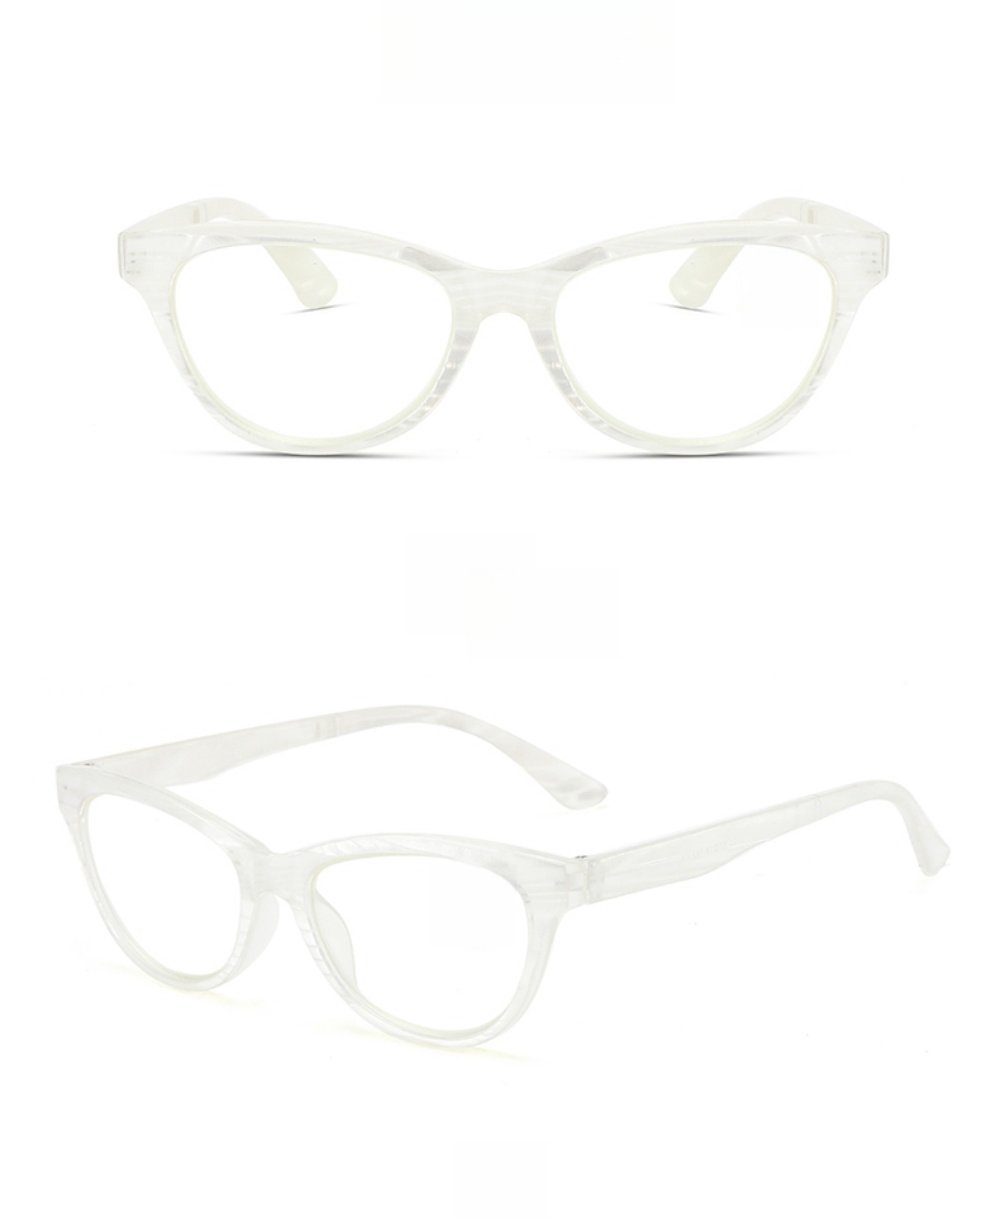 PACIEA Lesebrille Mode bedruckte Rahmen anti blaue presbyopische Gläser weiß | Lesebrillen